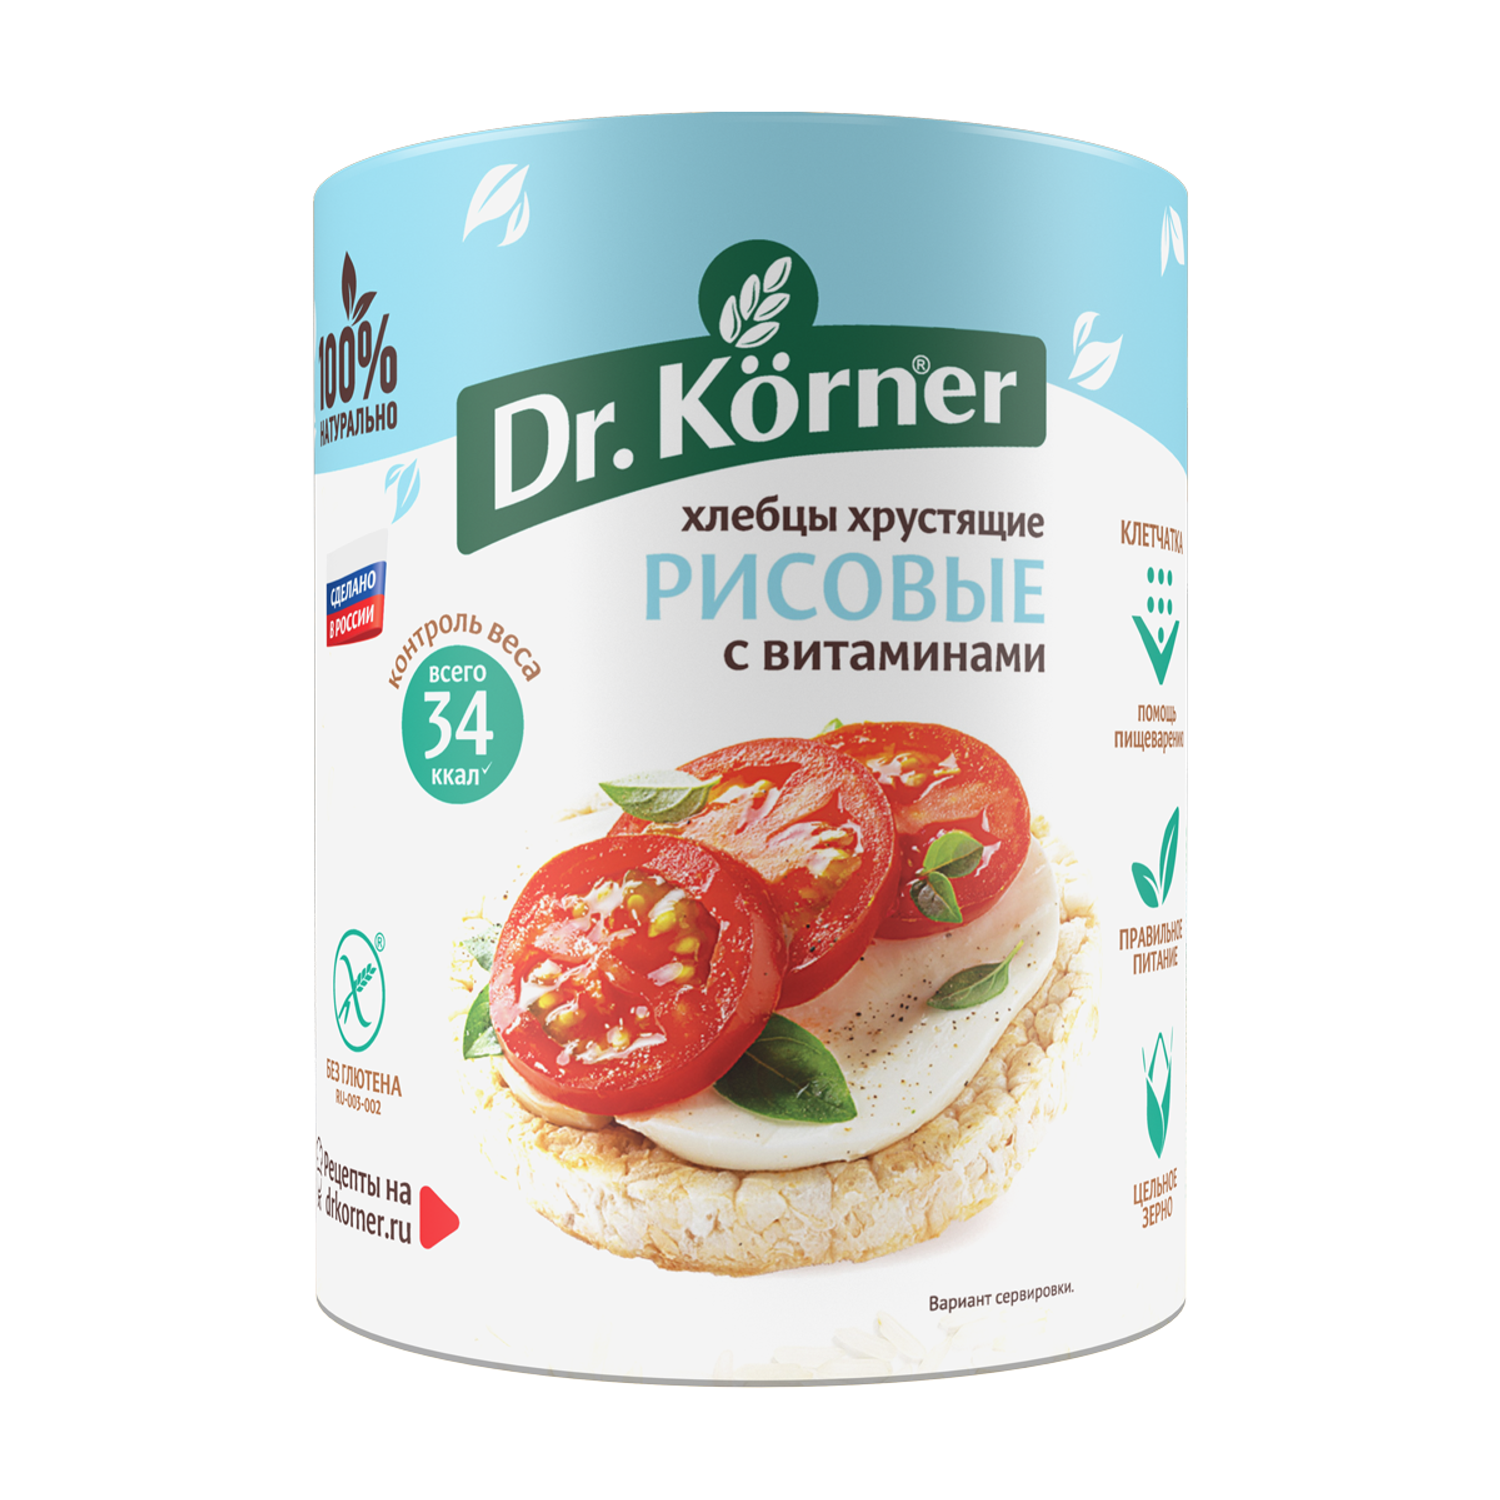 Хлебцы DrKorner Рисовые с витаминами 10 шт. по 100 гр. - фото 2